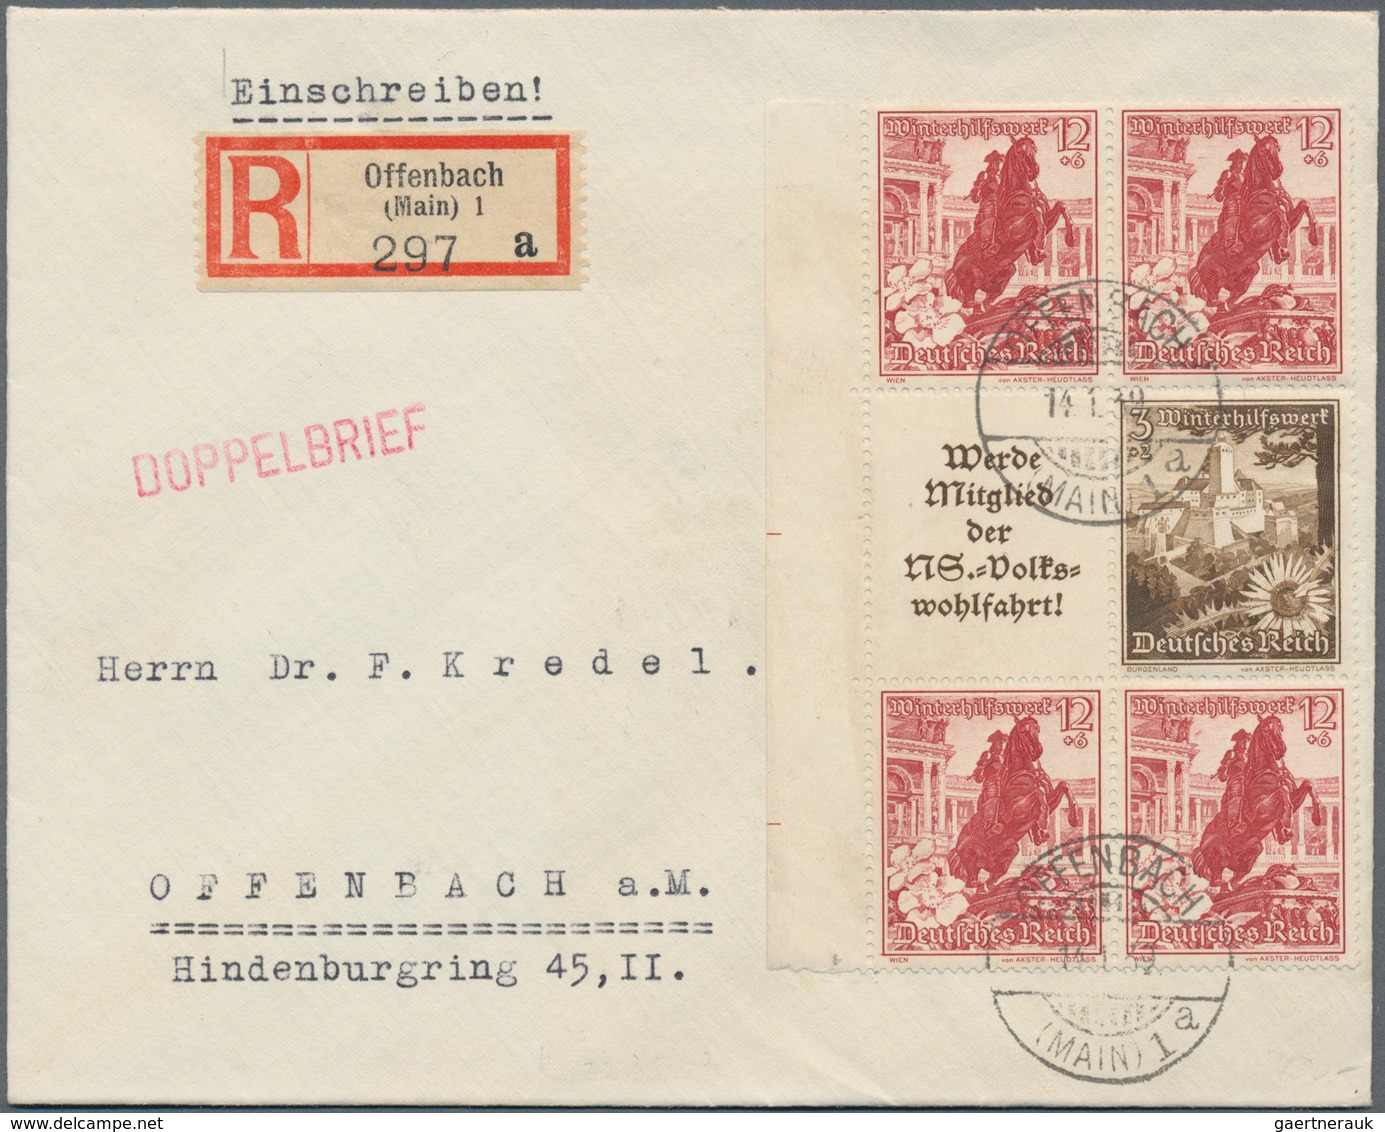 Deutsches Reich: 1872/1945, substanziell guter und sehr ergiebiger Posten von einigen tausend Briefe